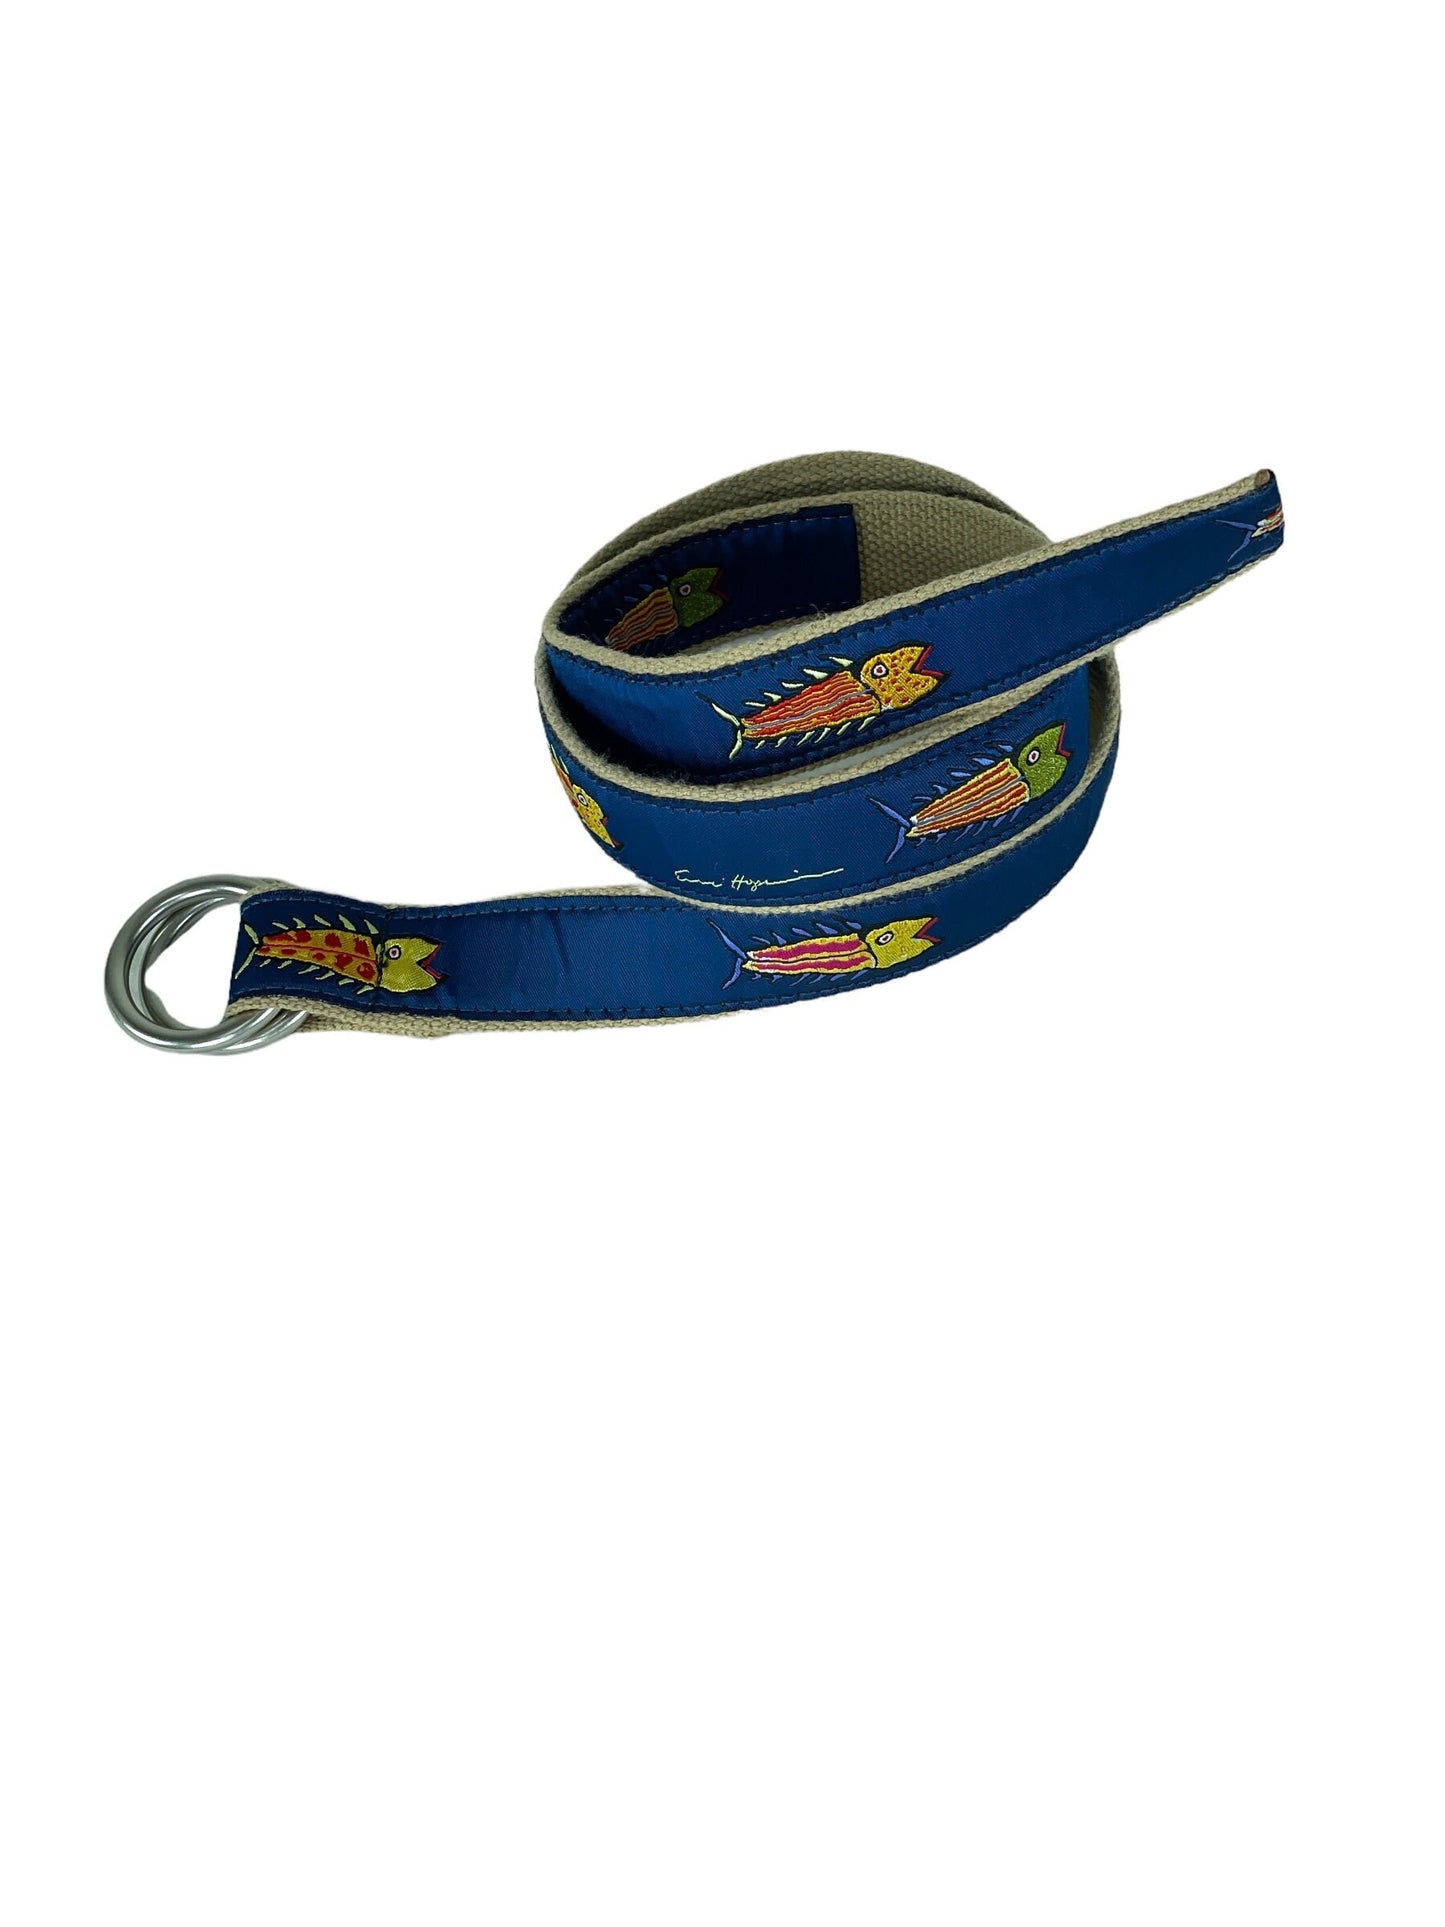 Vintage fish ribbon belt adjustable colorful preppy